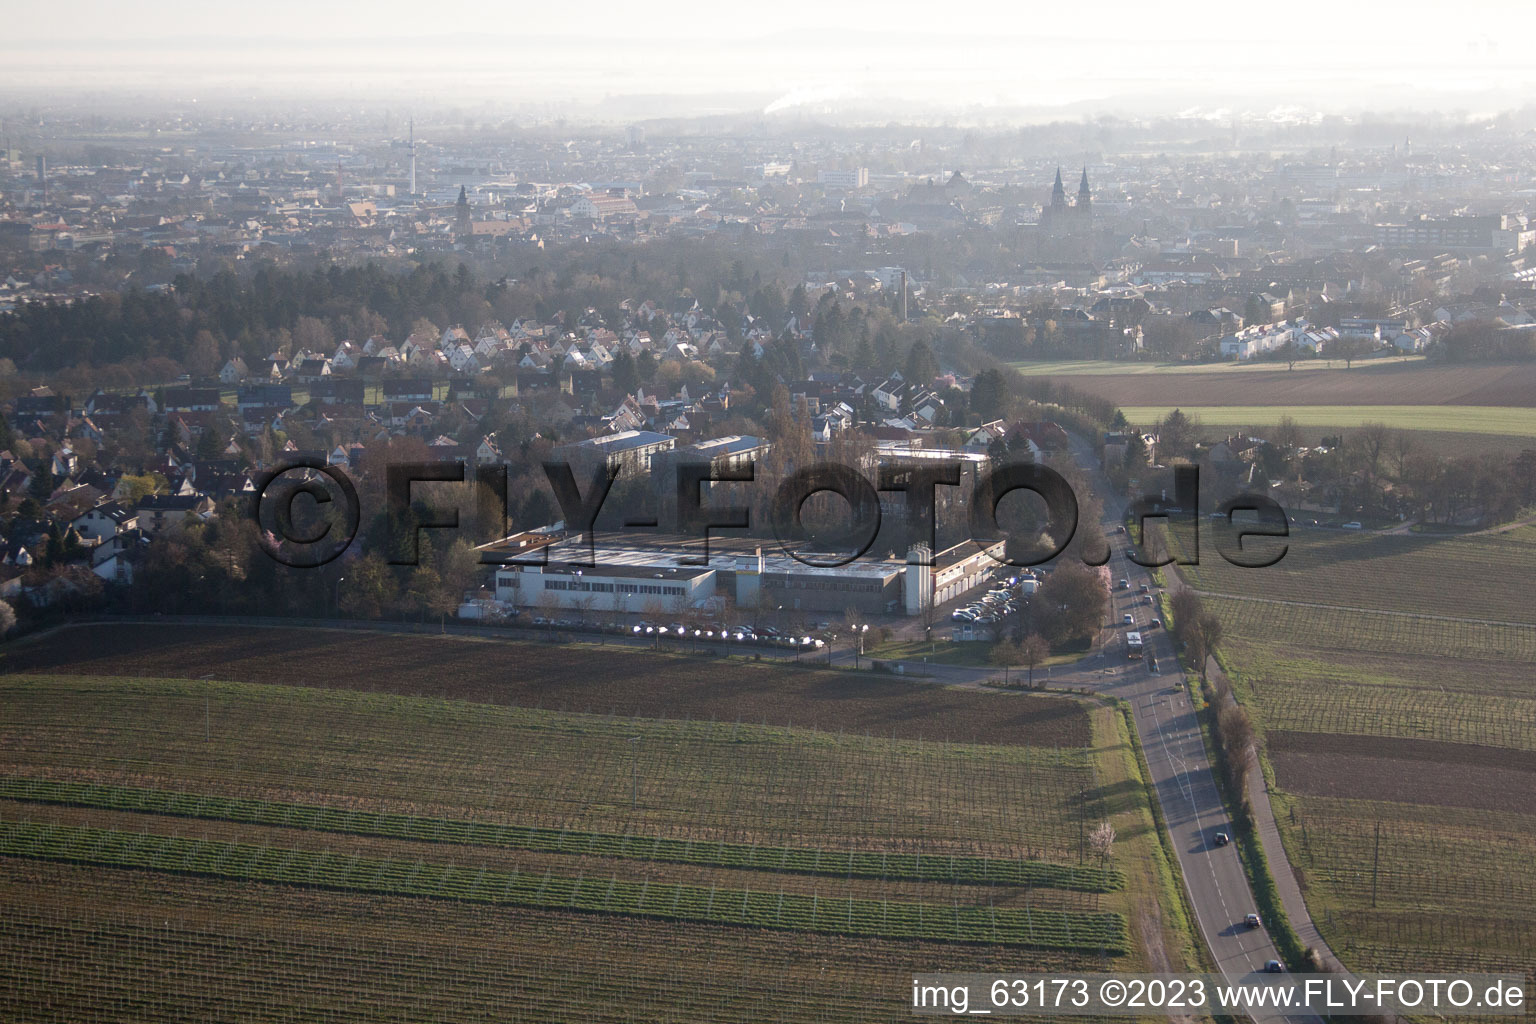 Landau in der Pfalz im Bundesland Rheinland-Pfalz, Deutschland von der Drohne aus gesehen